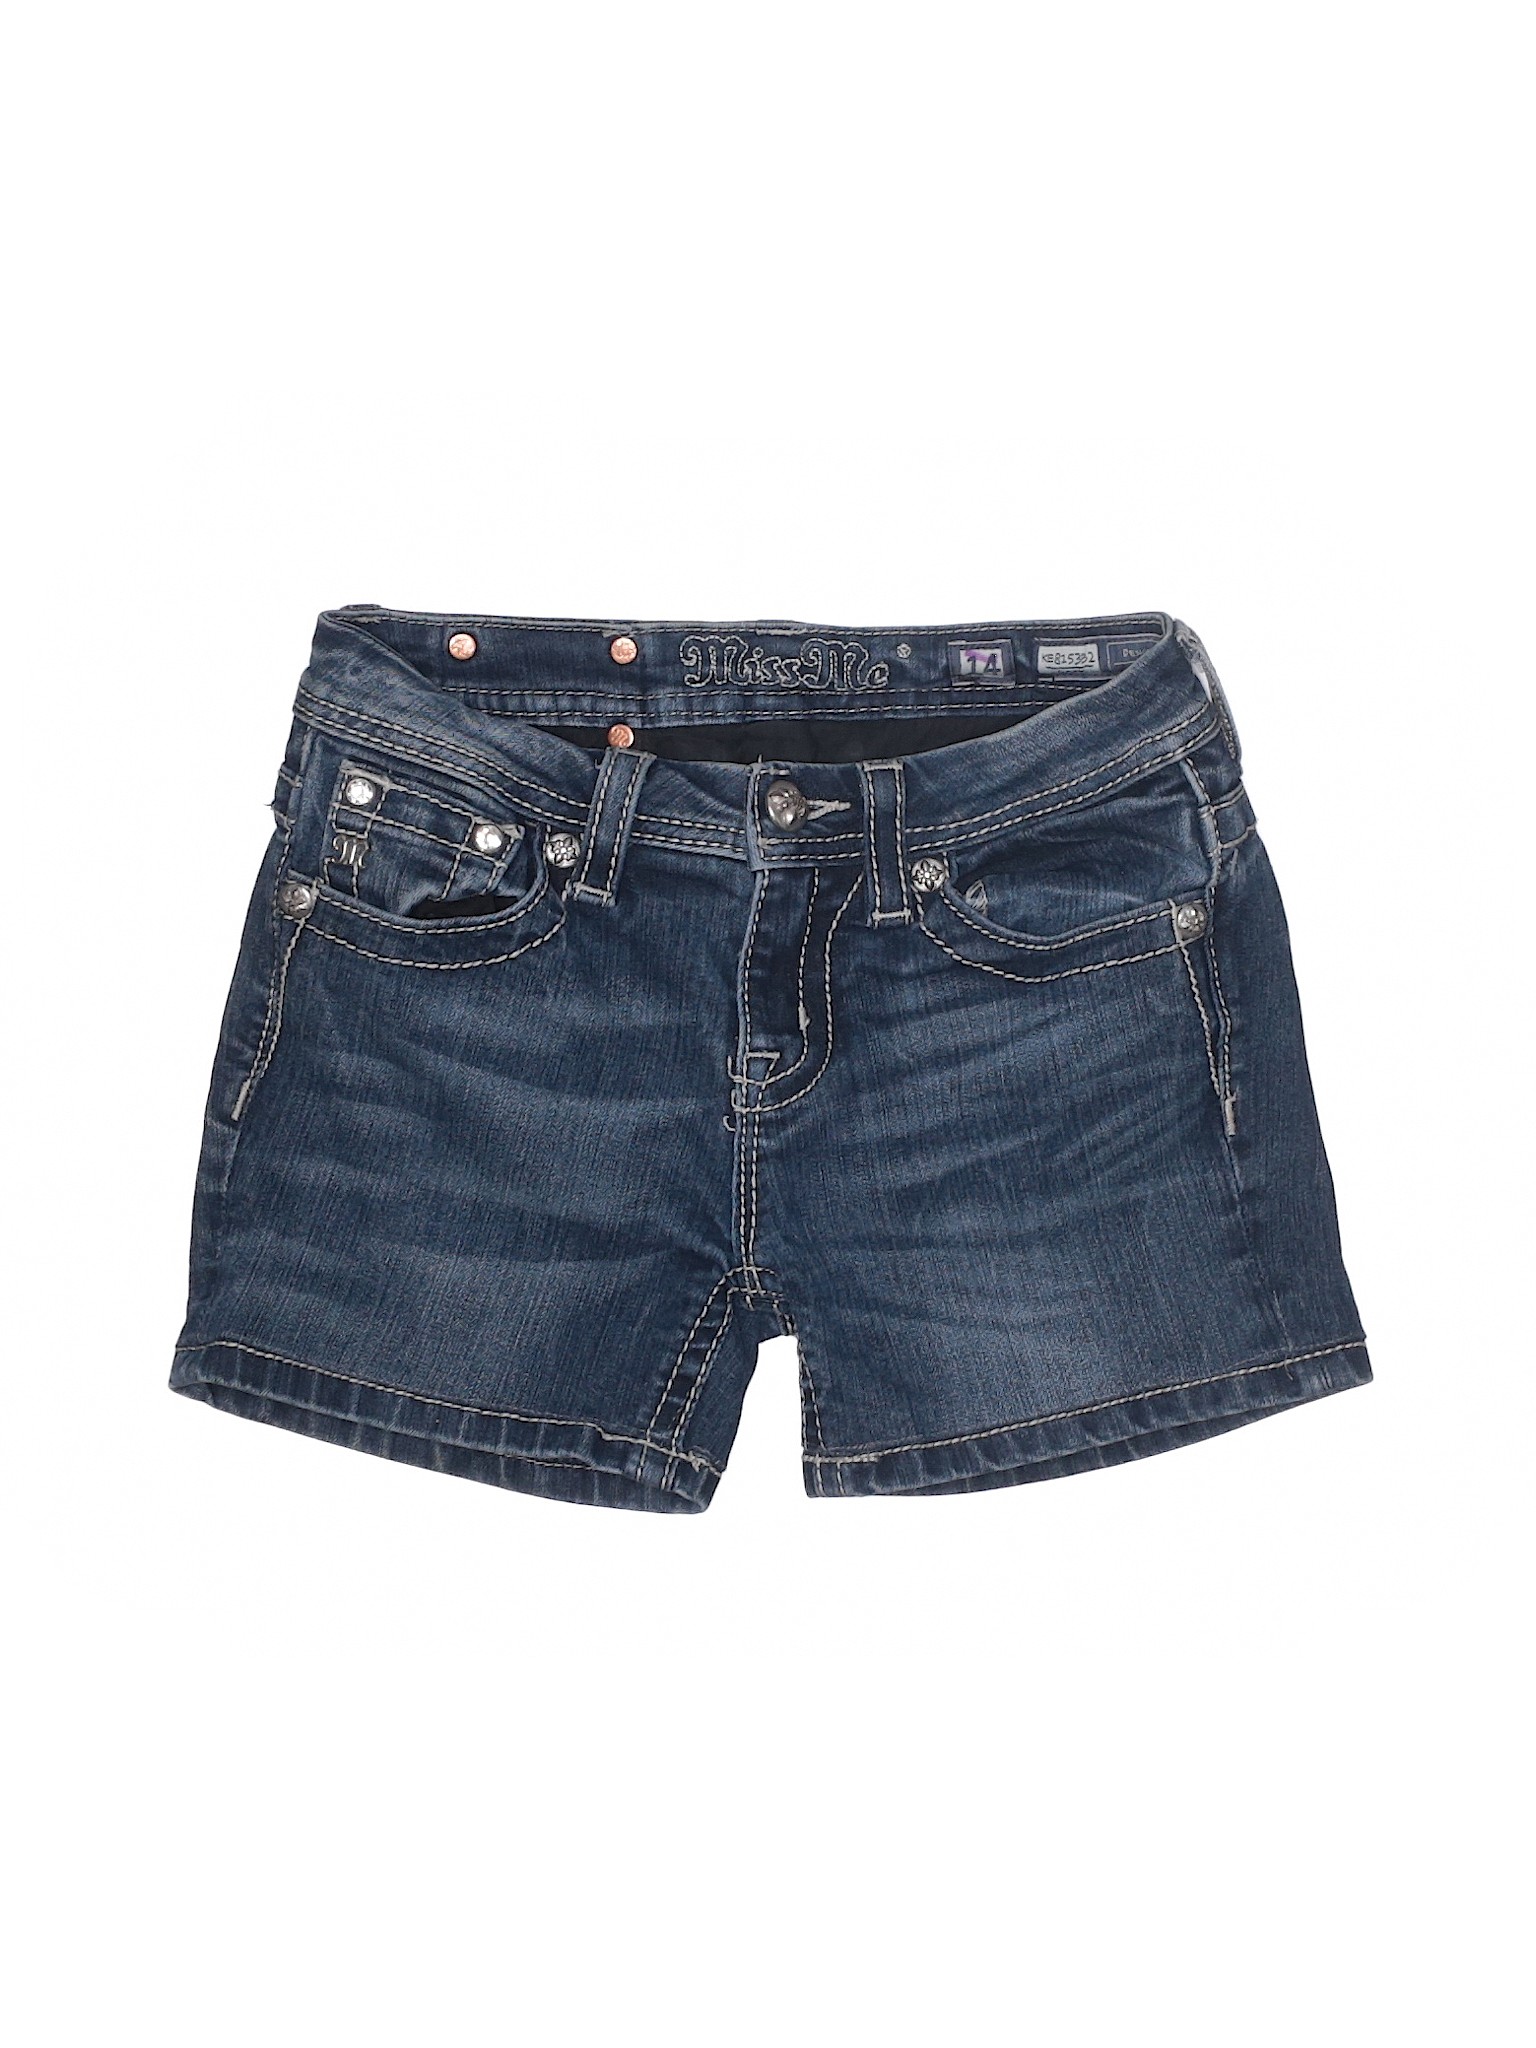 Miss Me Solid Blue Denim Shorts Size 14 - 21% off | thredUP